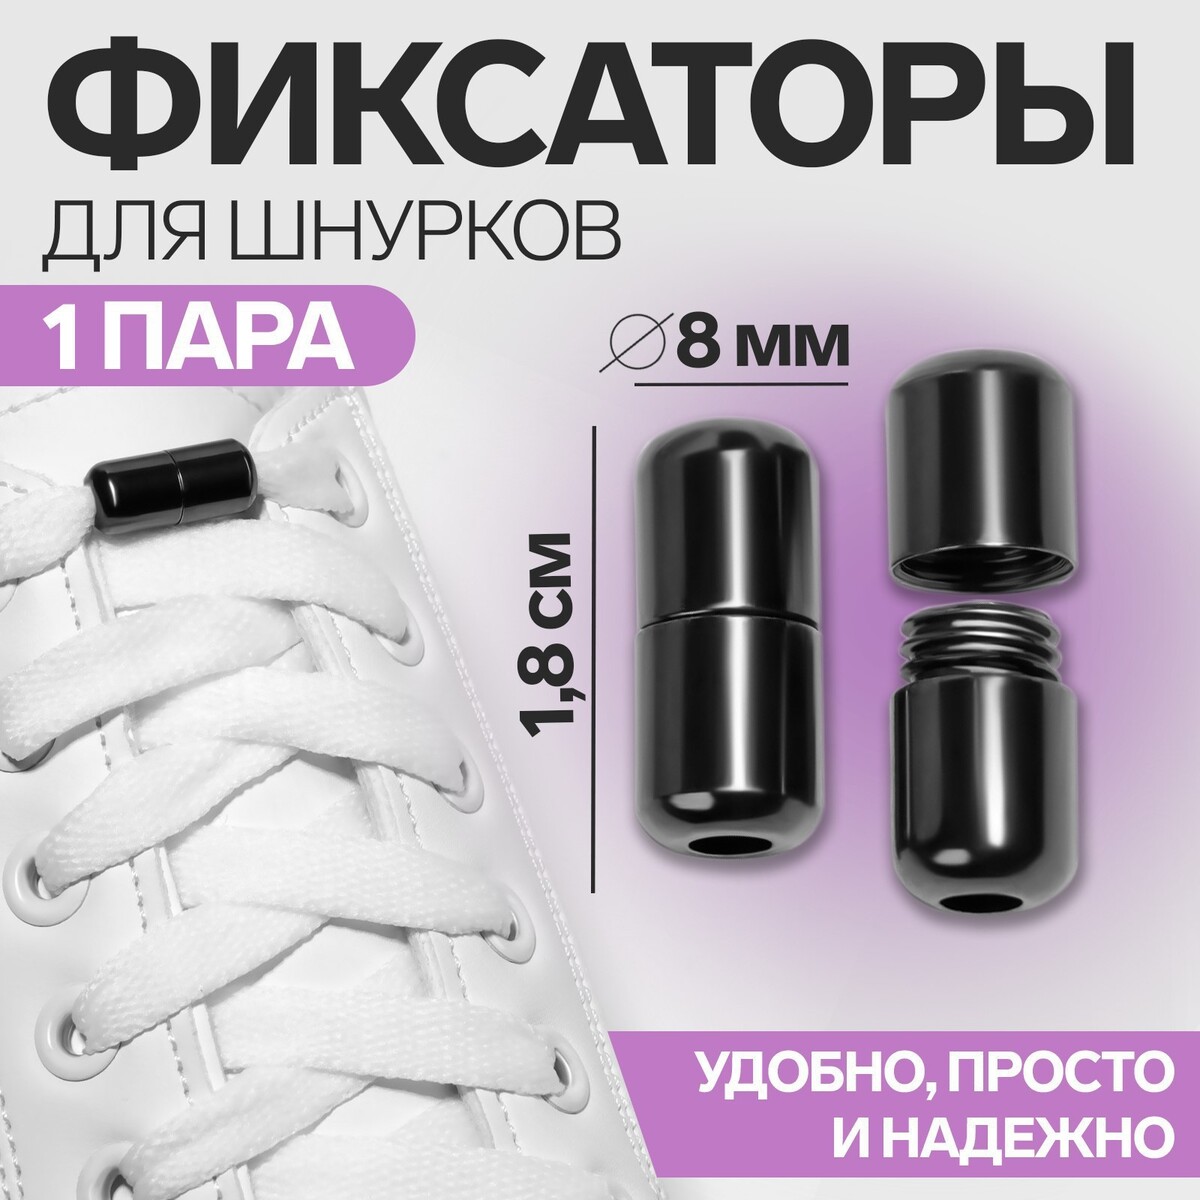 Фиксатор для шнурков, пара, d = 8 мм, 1,8 см, цвет черный никель фиксатор для шнурков пара d 8 мм 1 8 см серебристый